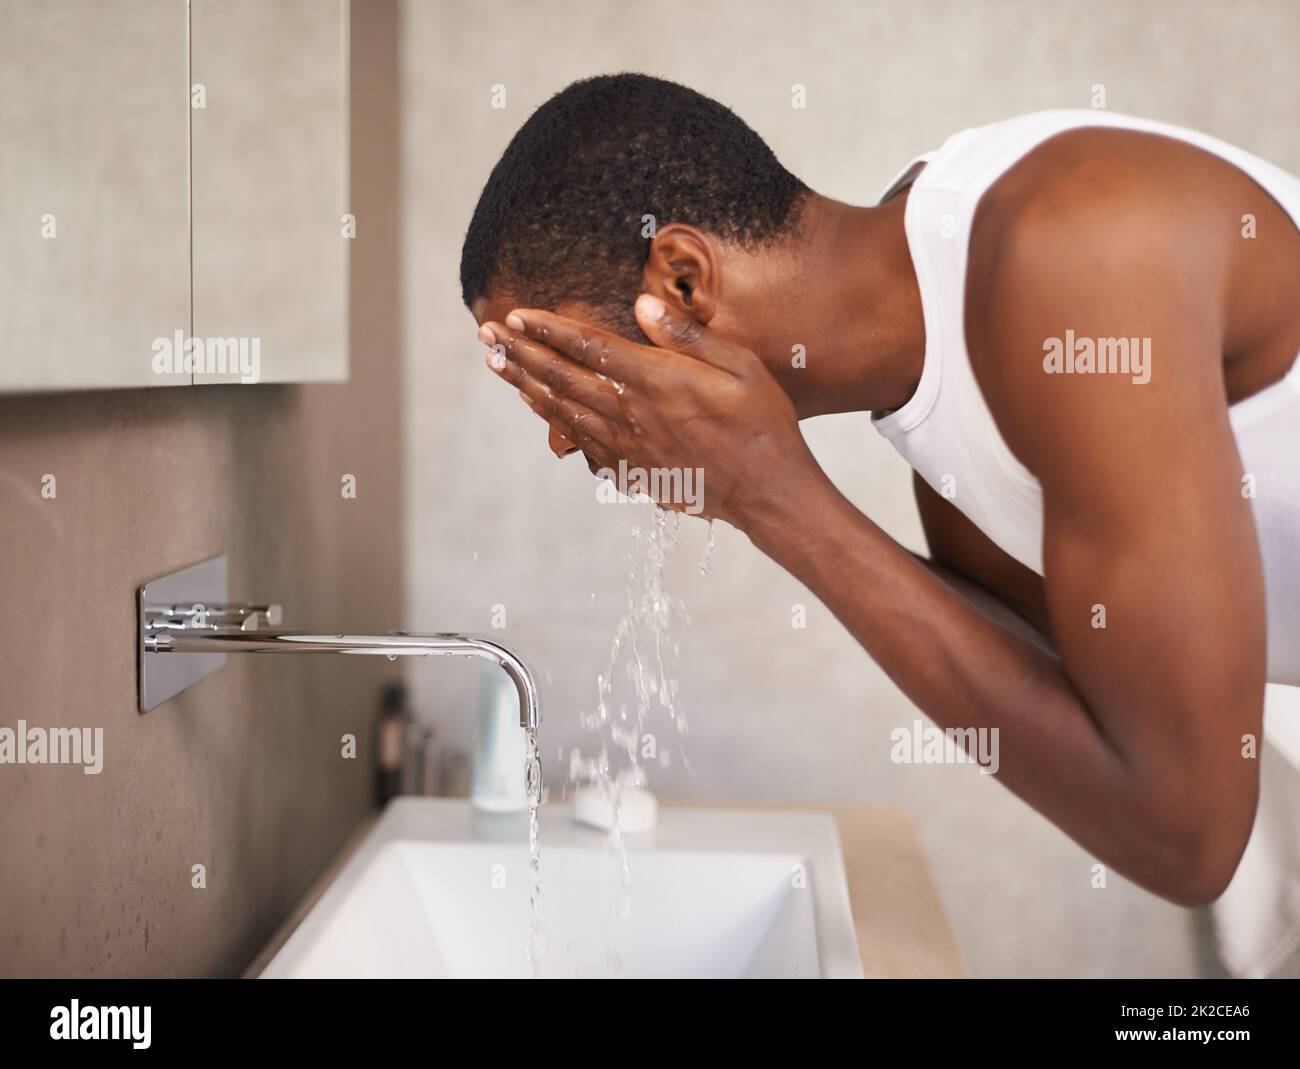 Sauber halten für die Damen. Ein junger Mann wascht sich das Gesicht. Stockfoto